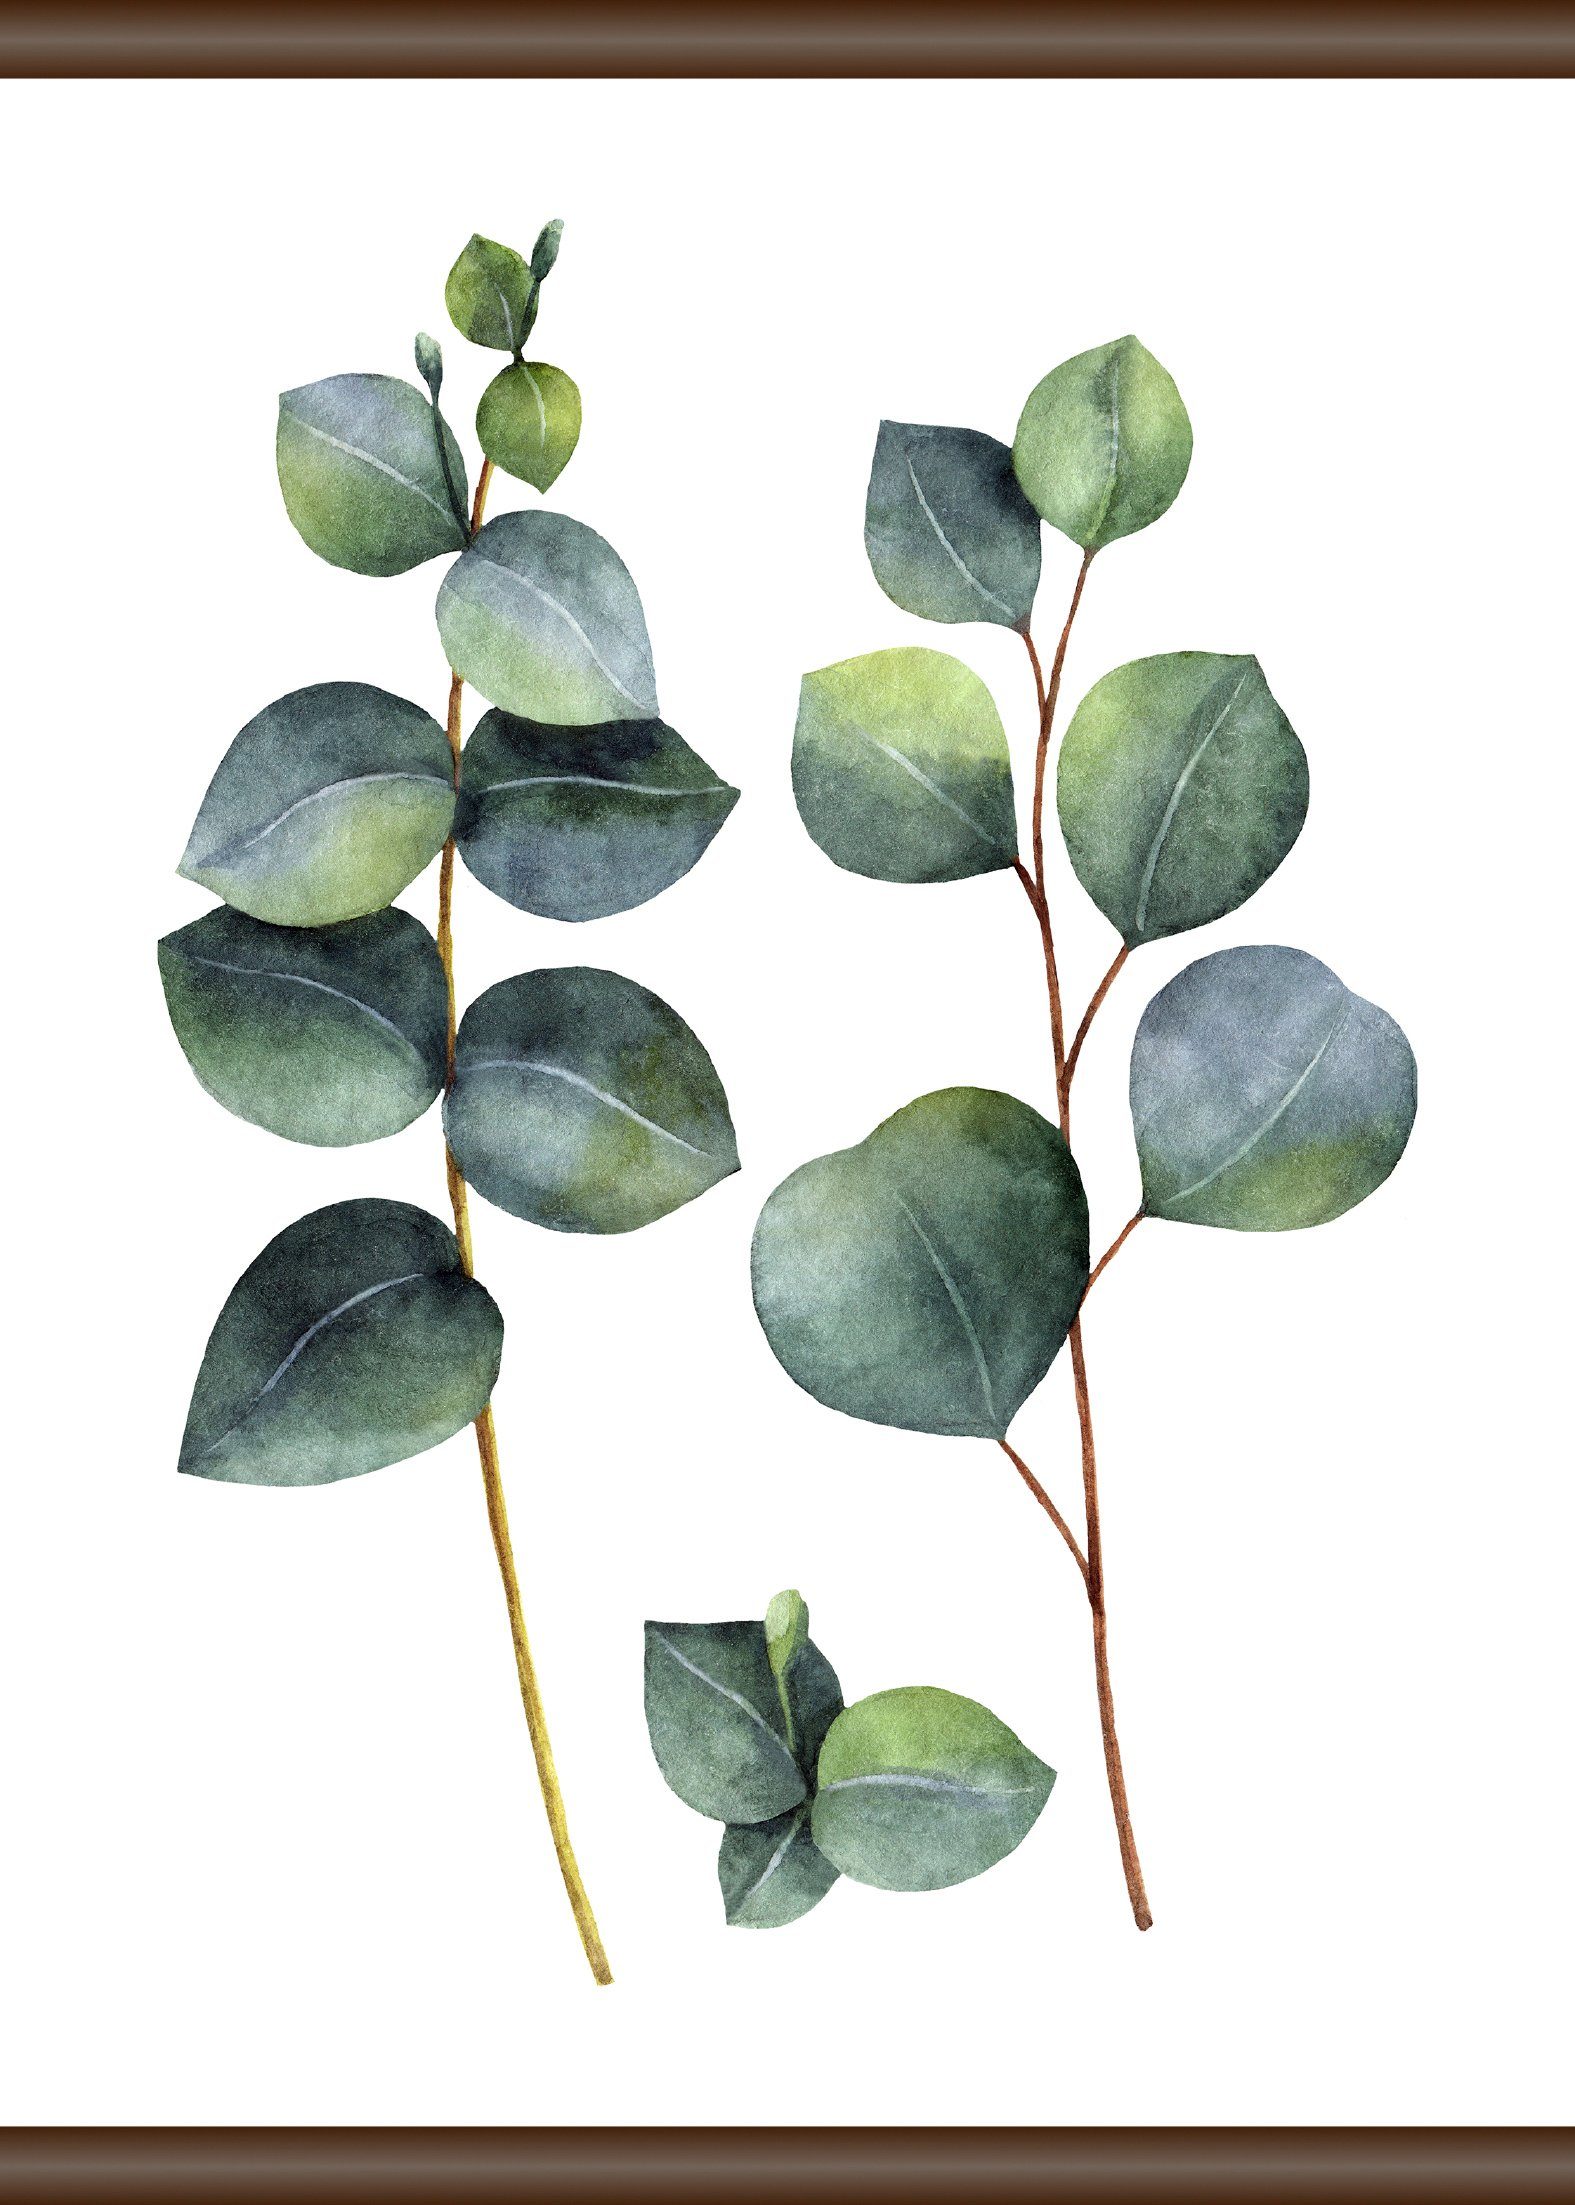 Leinwandbild Mit beeindruckenden Bildqualität 50x70 cm, und Eukalyptus Farben queence Pflanze, hervorragender